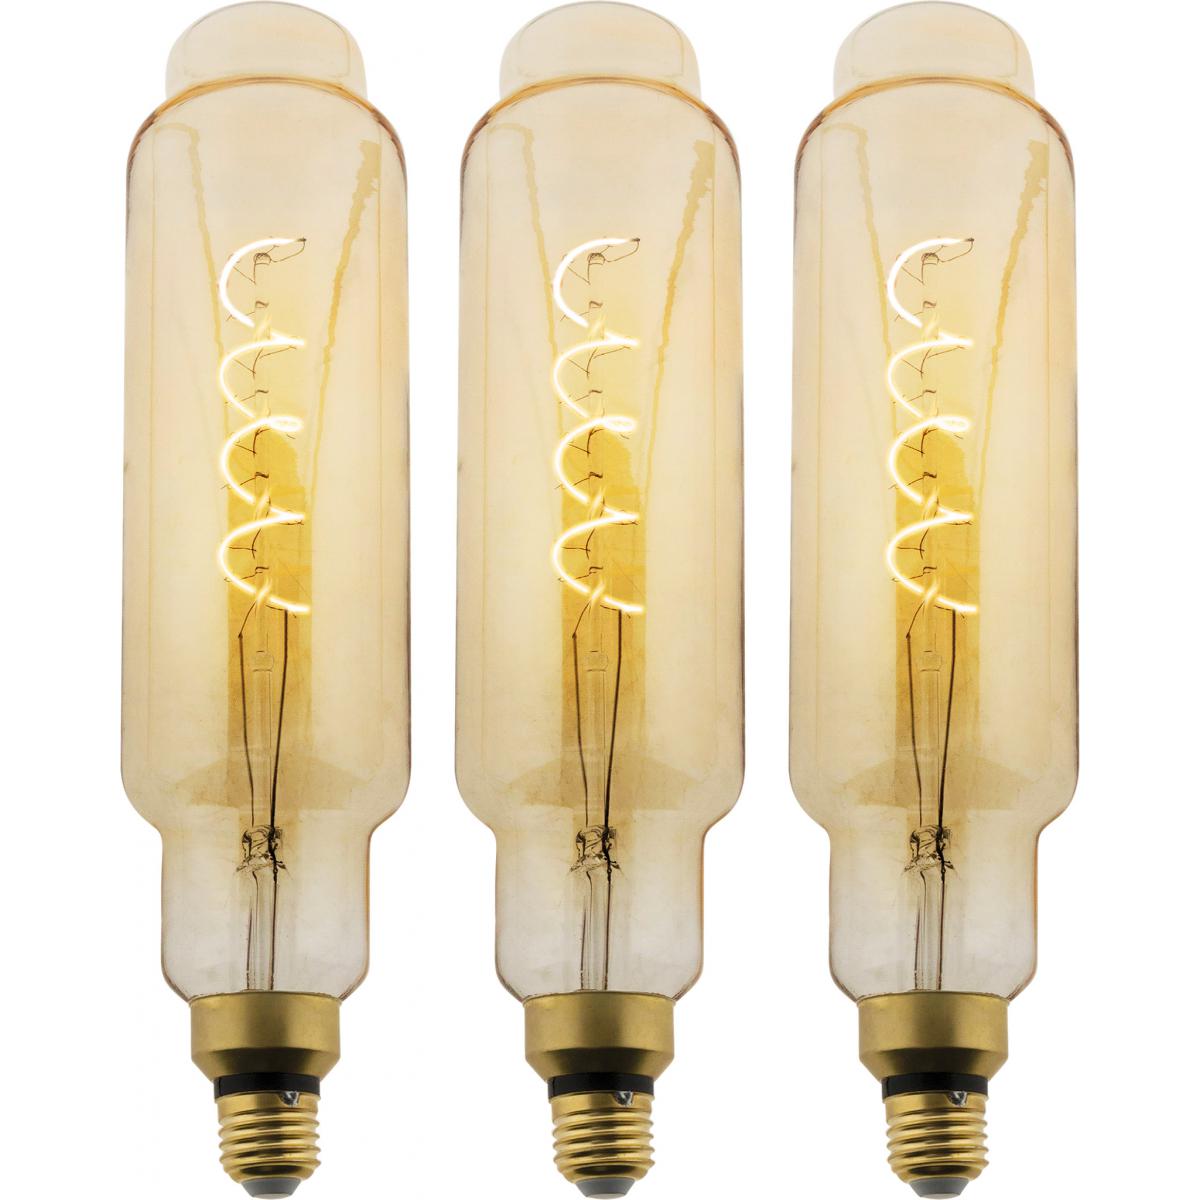 Elexity - Lot de 3 ampoules LED Filament Géante Ovale - 5W E27 350lm 2500K (Blanc chaud) - Ampoules LED